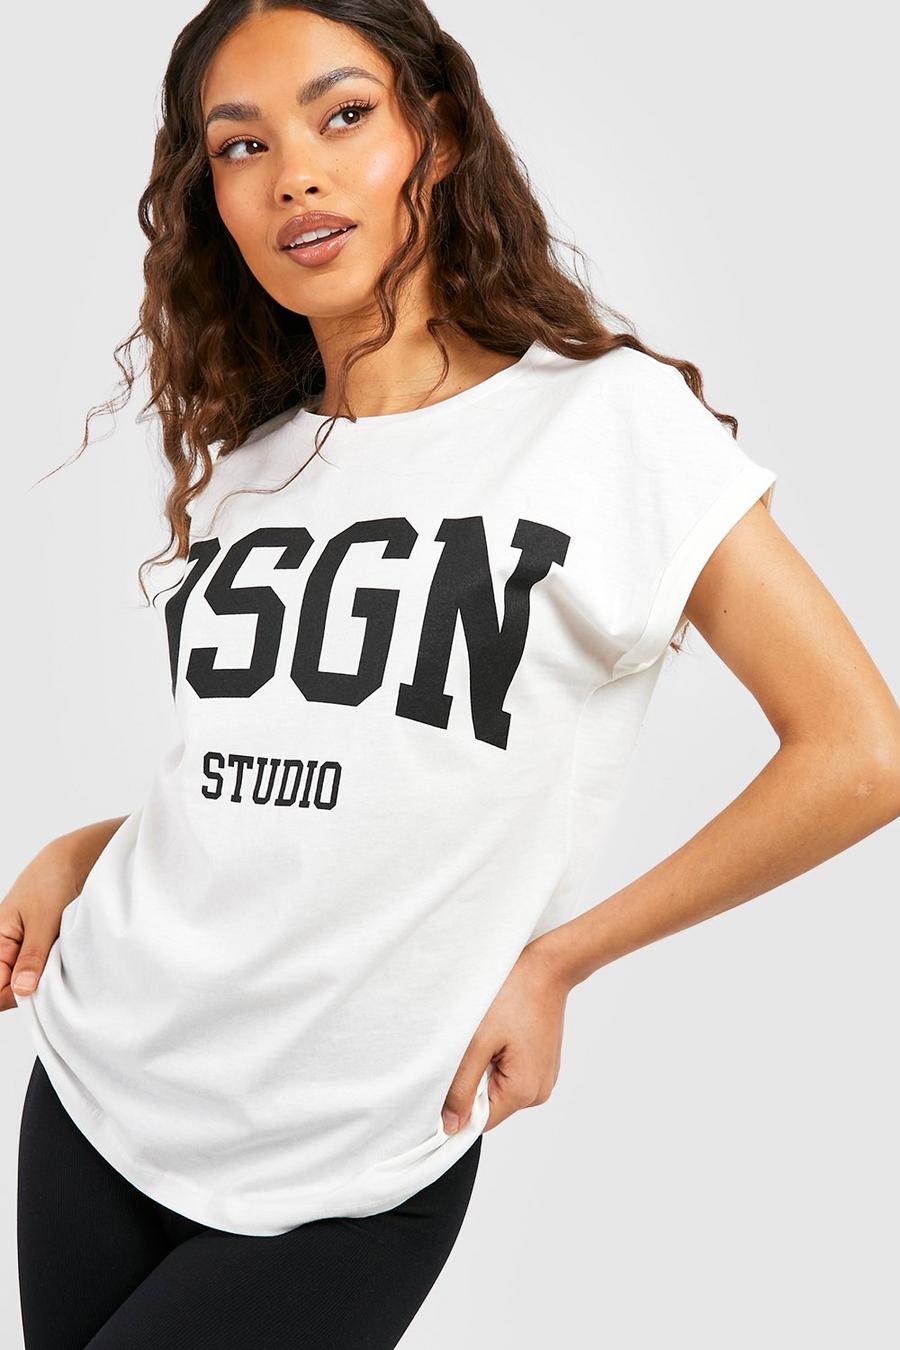 T-shirt à manches retroussées et slogan Dsgn Studio, White blanc